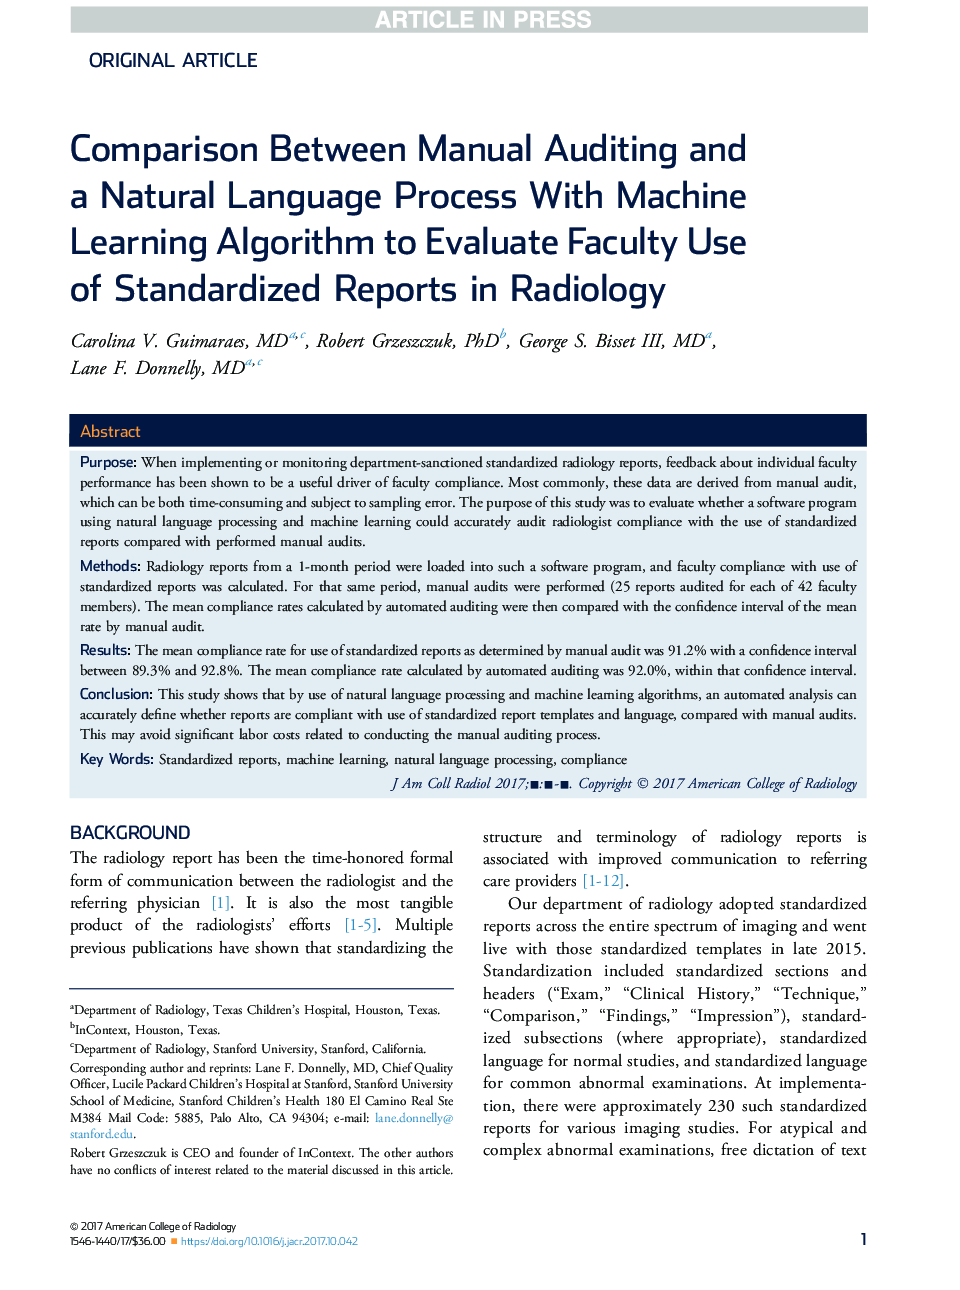 مقایسه بین حسابرسی دستی و فرآیند زبان طبیعی با الگوریتم آموزش ماشین برای ارزیابی استفاده از گزارشات استاندارد شده در رادیولوژی دانشکده 